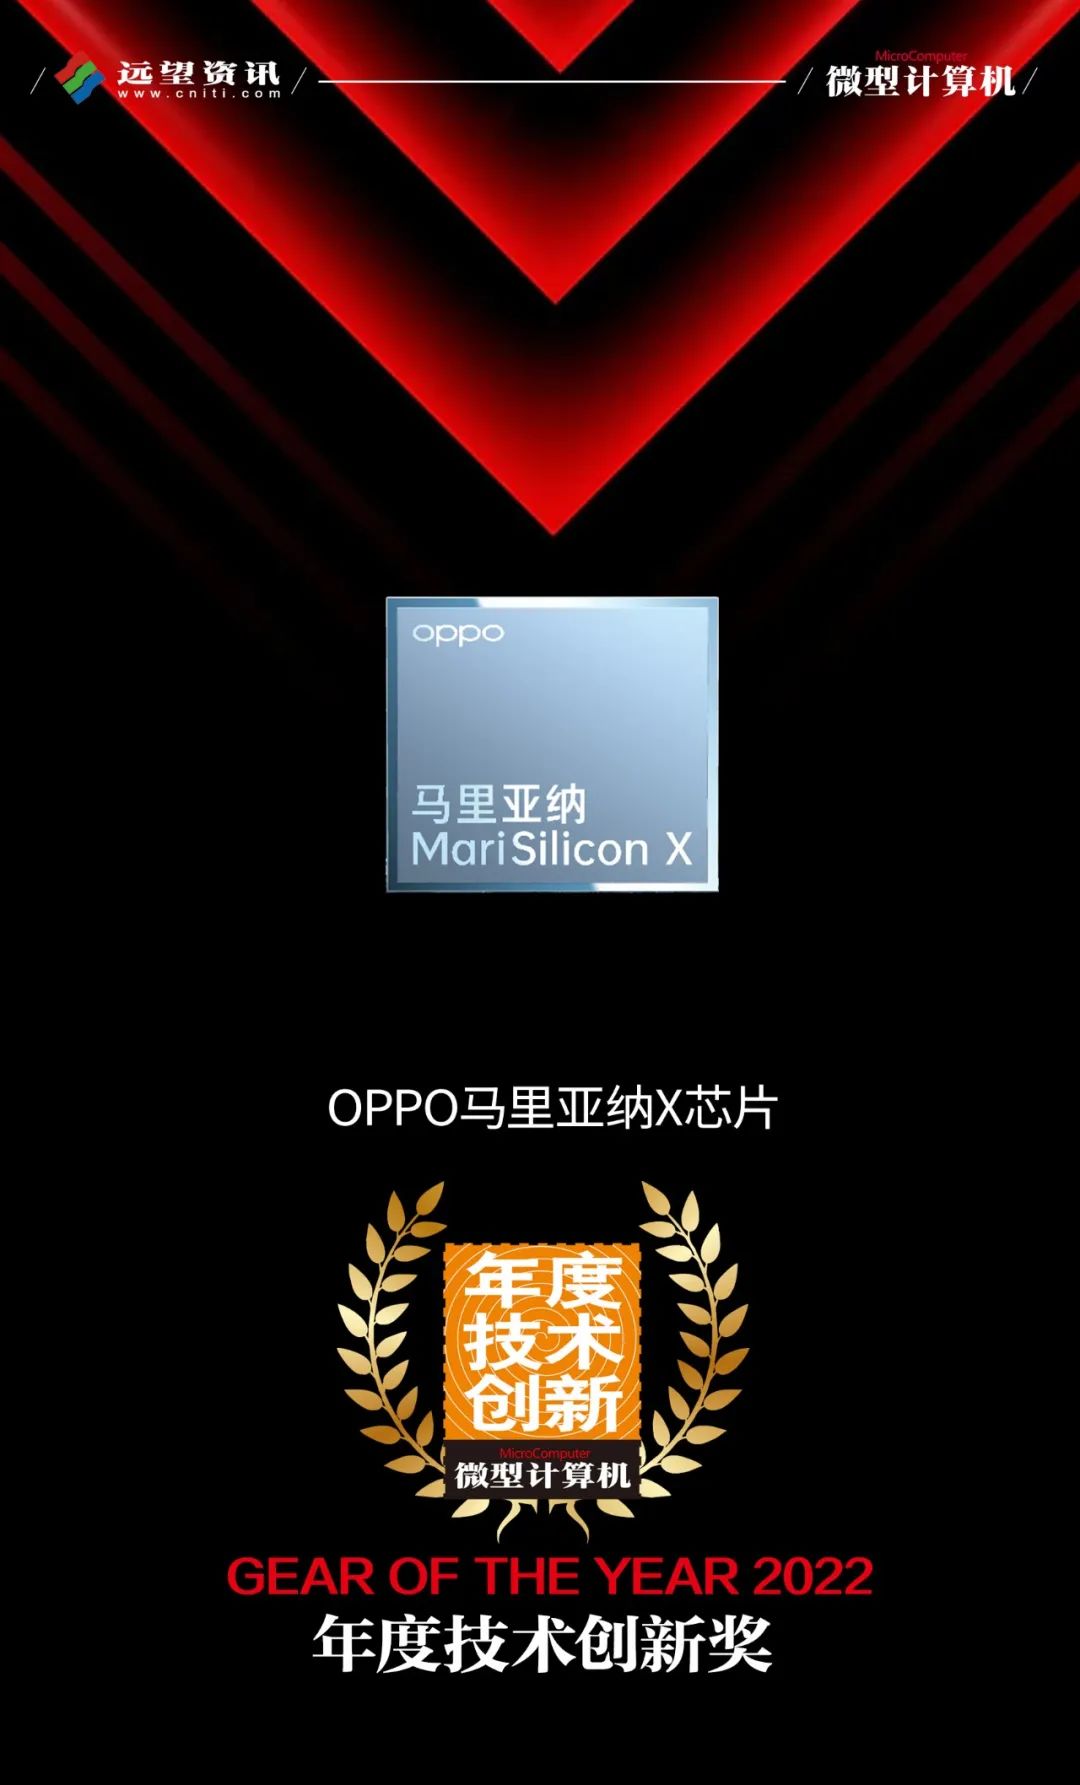 OPPO|【MC年度评选】OPPO/一加荣获多项2022年度大奖